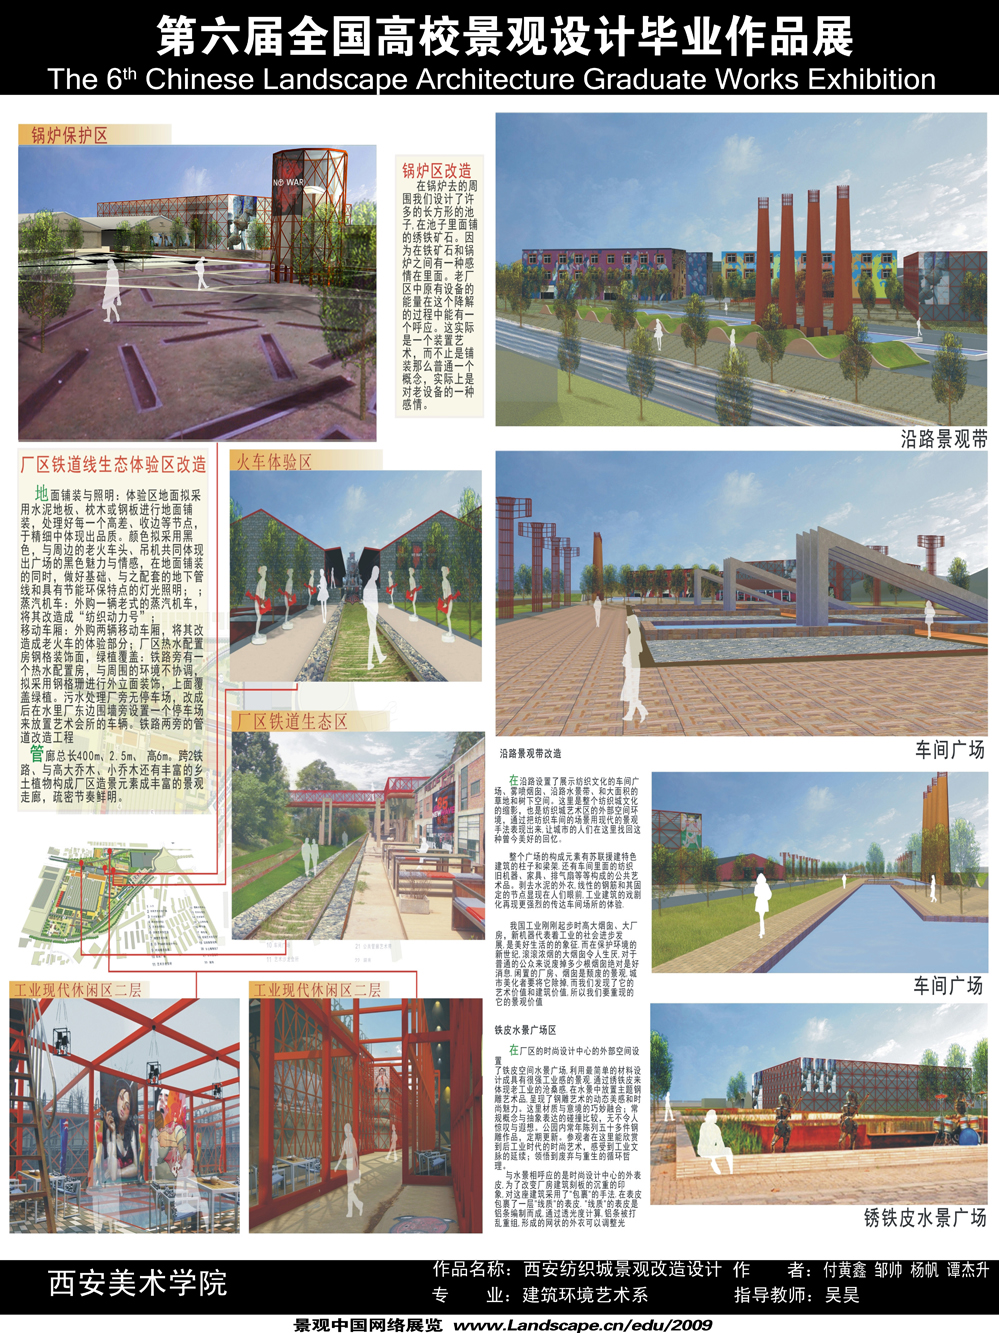 西安纺织城景观规划与后工业产业建筑适应性改造-2